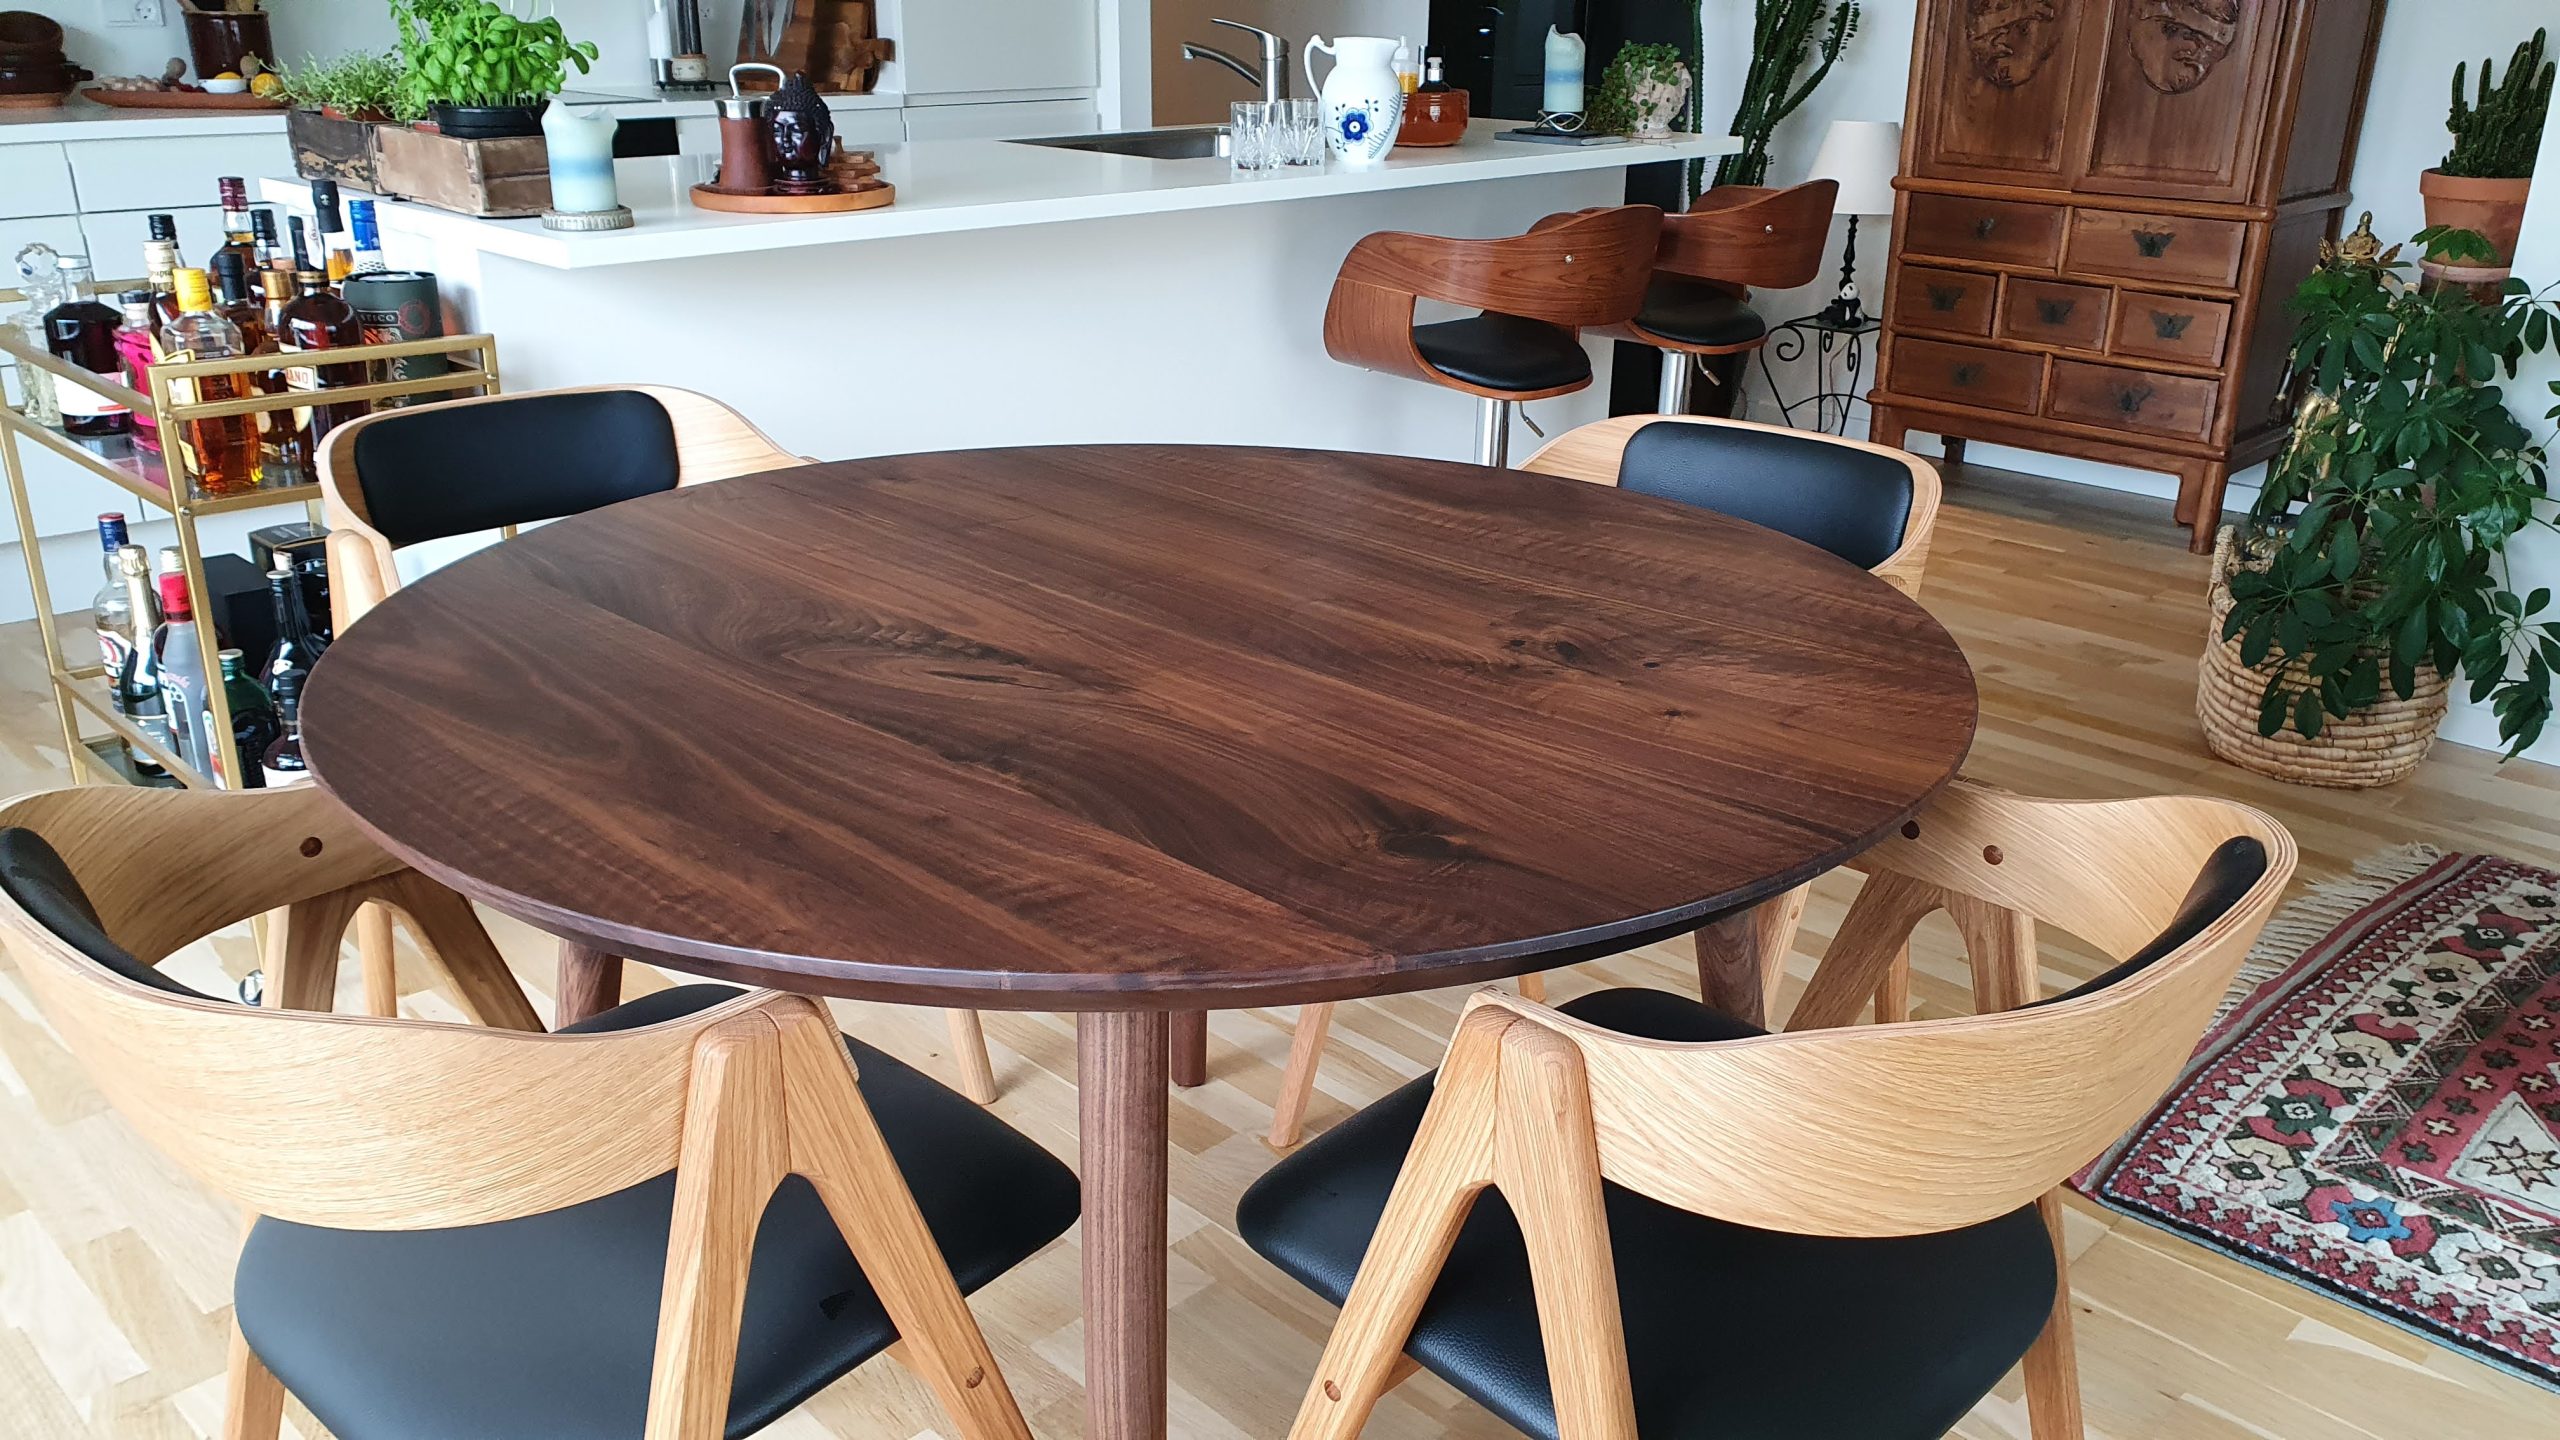 Runder Tisch 2021 Kaerbygård20210512 140709 1 skaliert